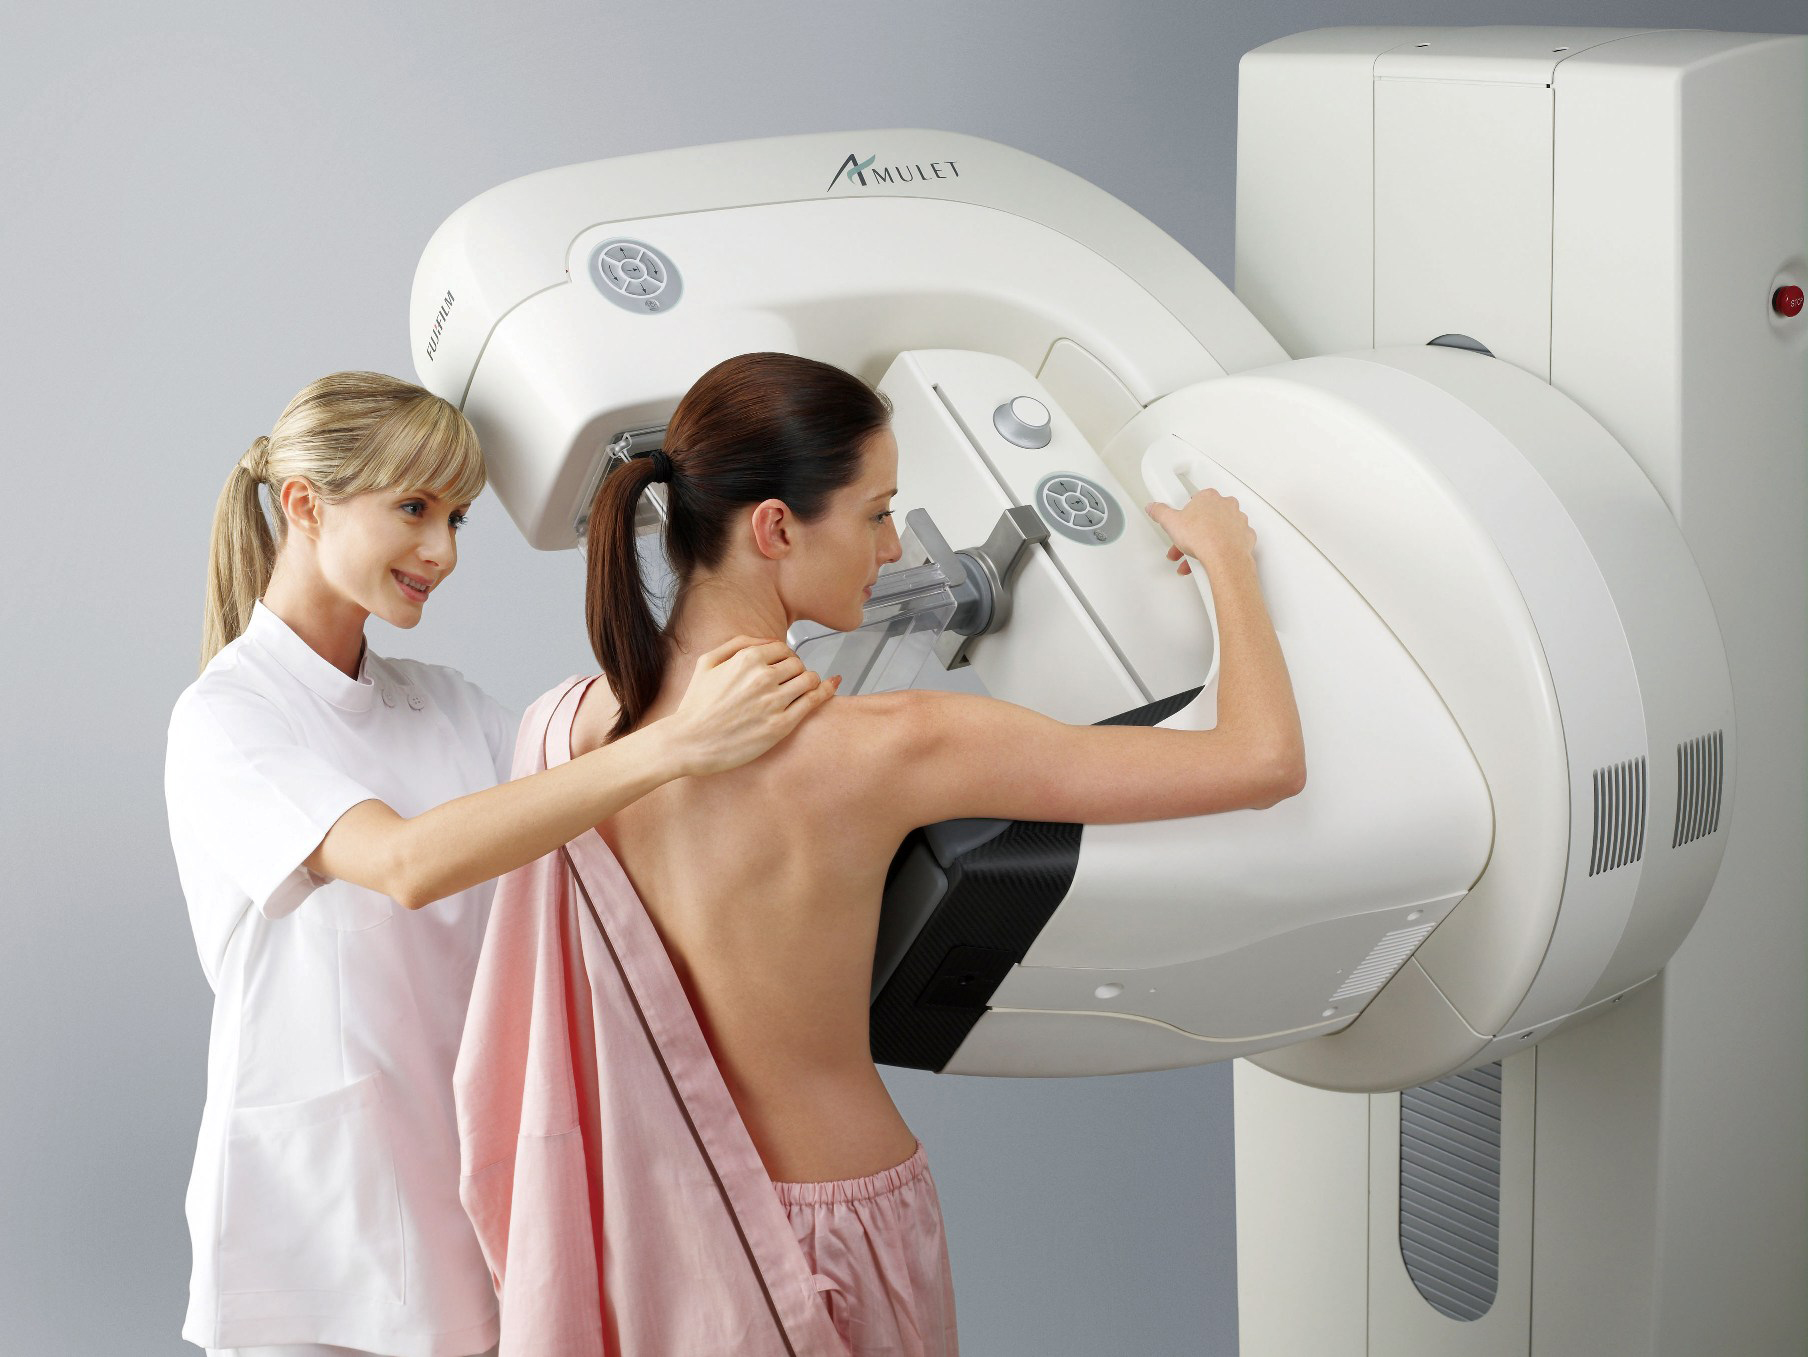 Diminuindo o desconforto nas mamografias